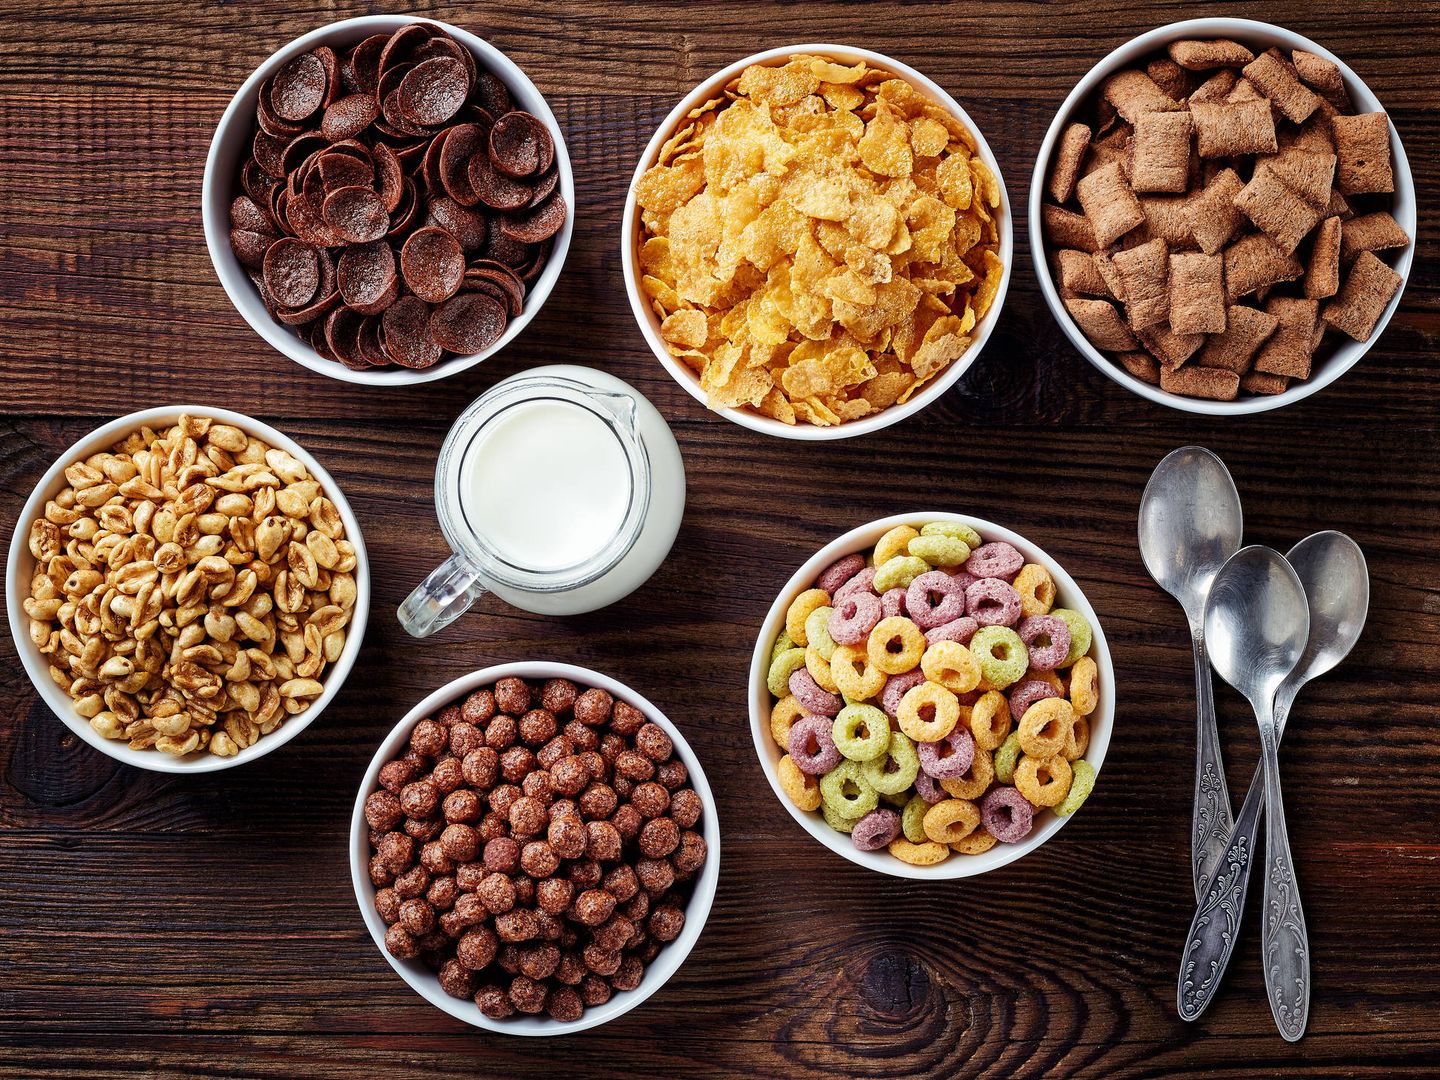 Cereales, un clásico en nuestros desayunos. (iStock)